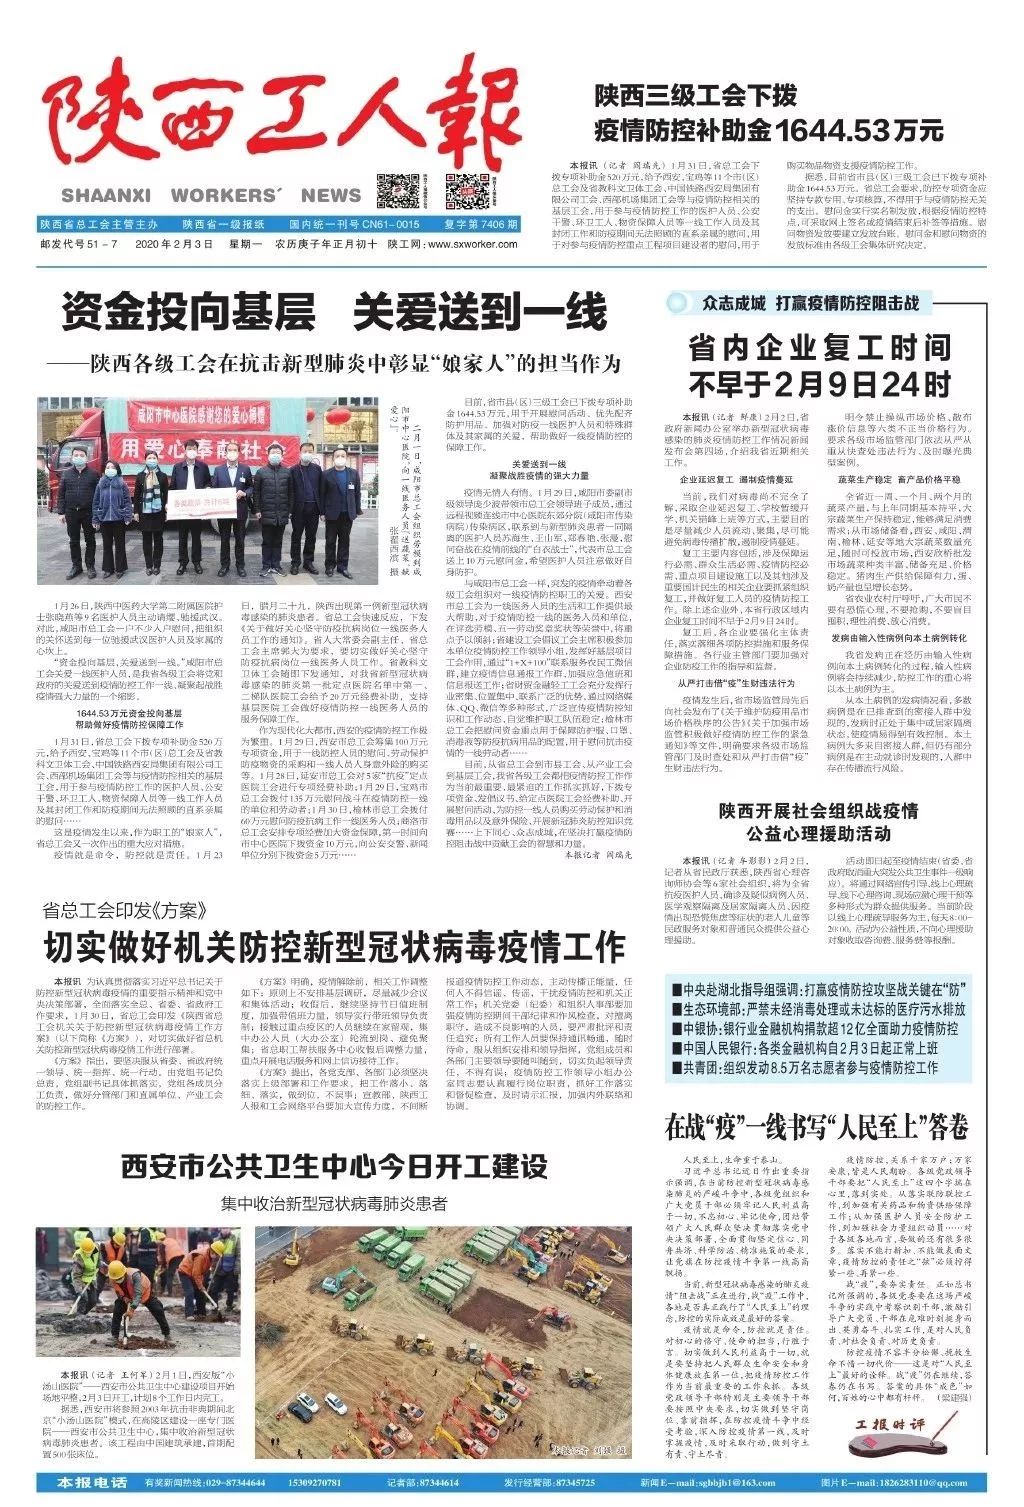 是陕西省委主管,陕西日报主办的一份大型综合性新闻性报纸